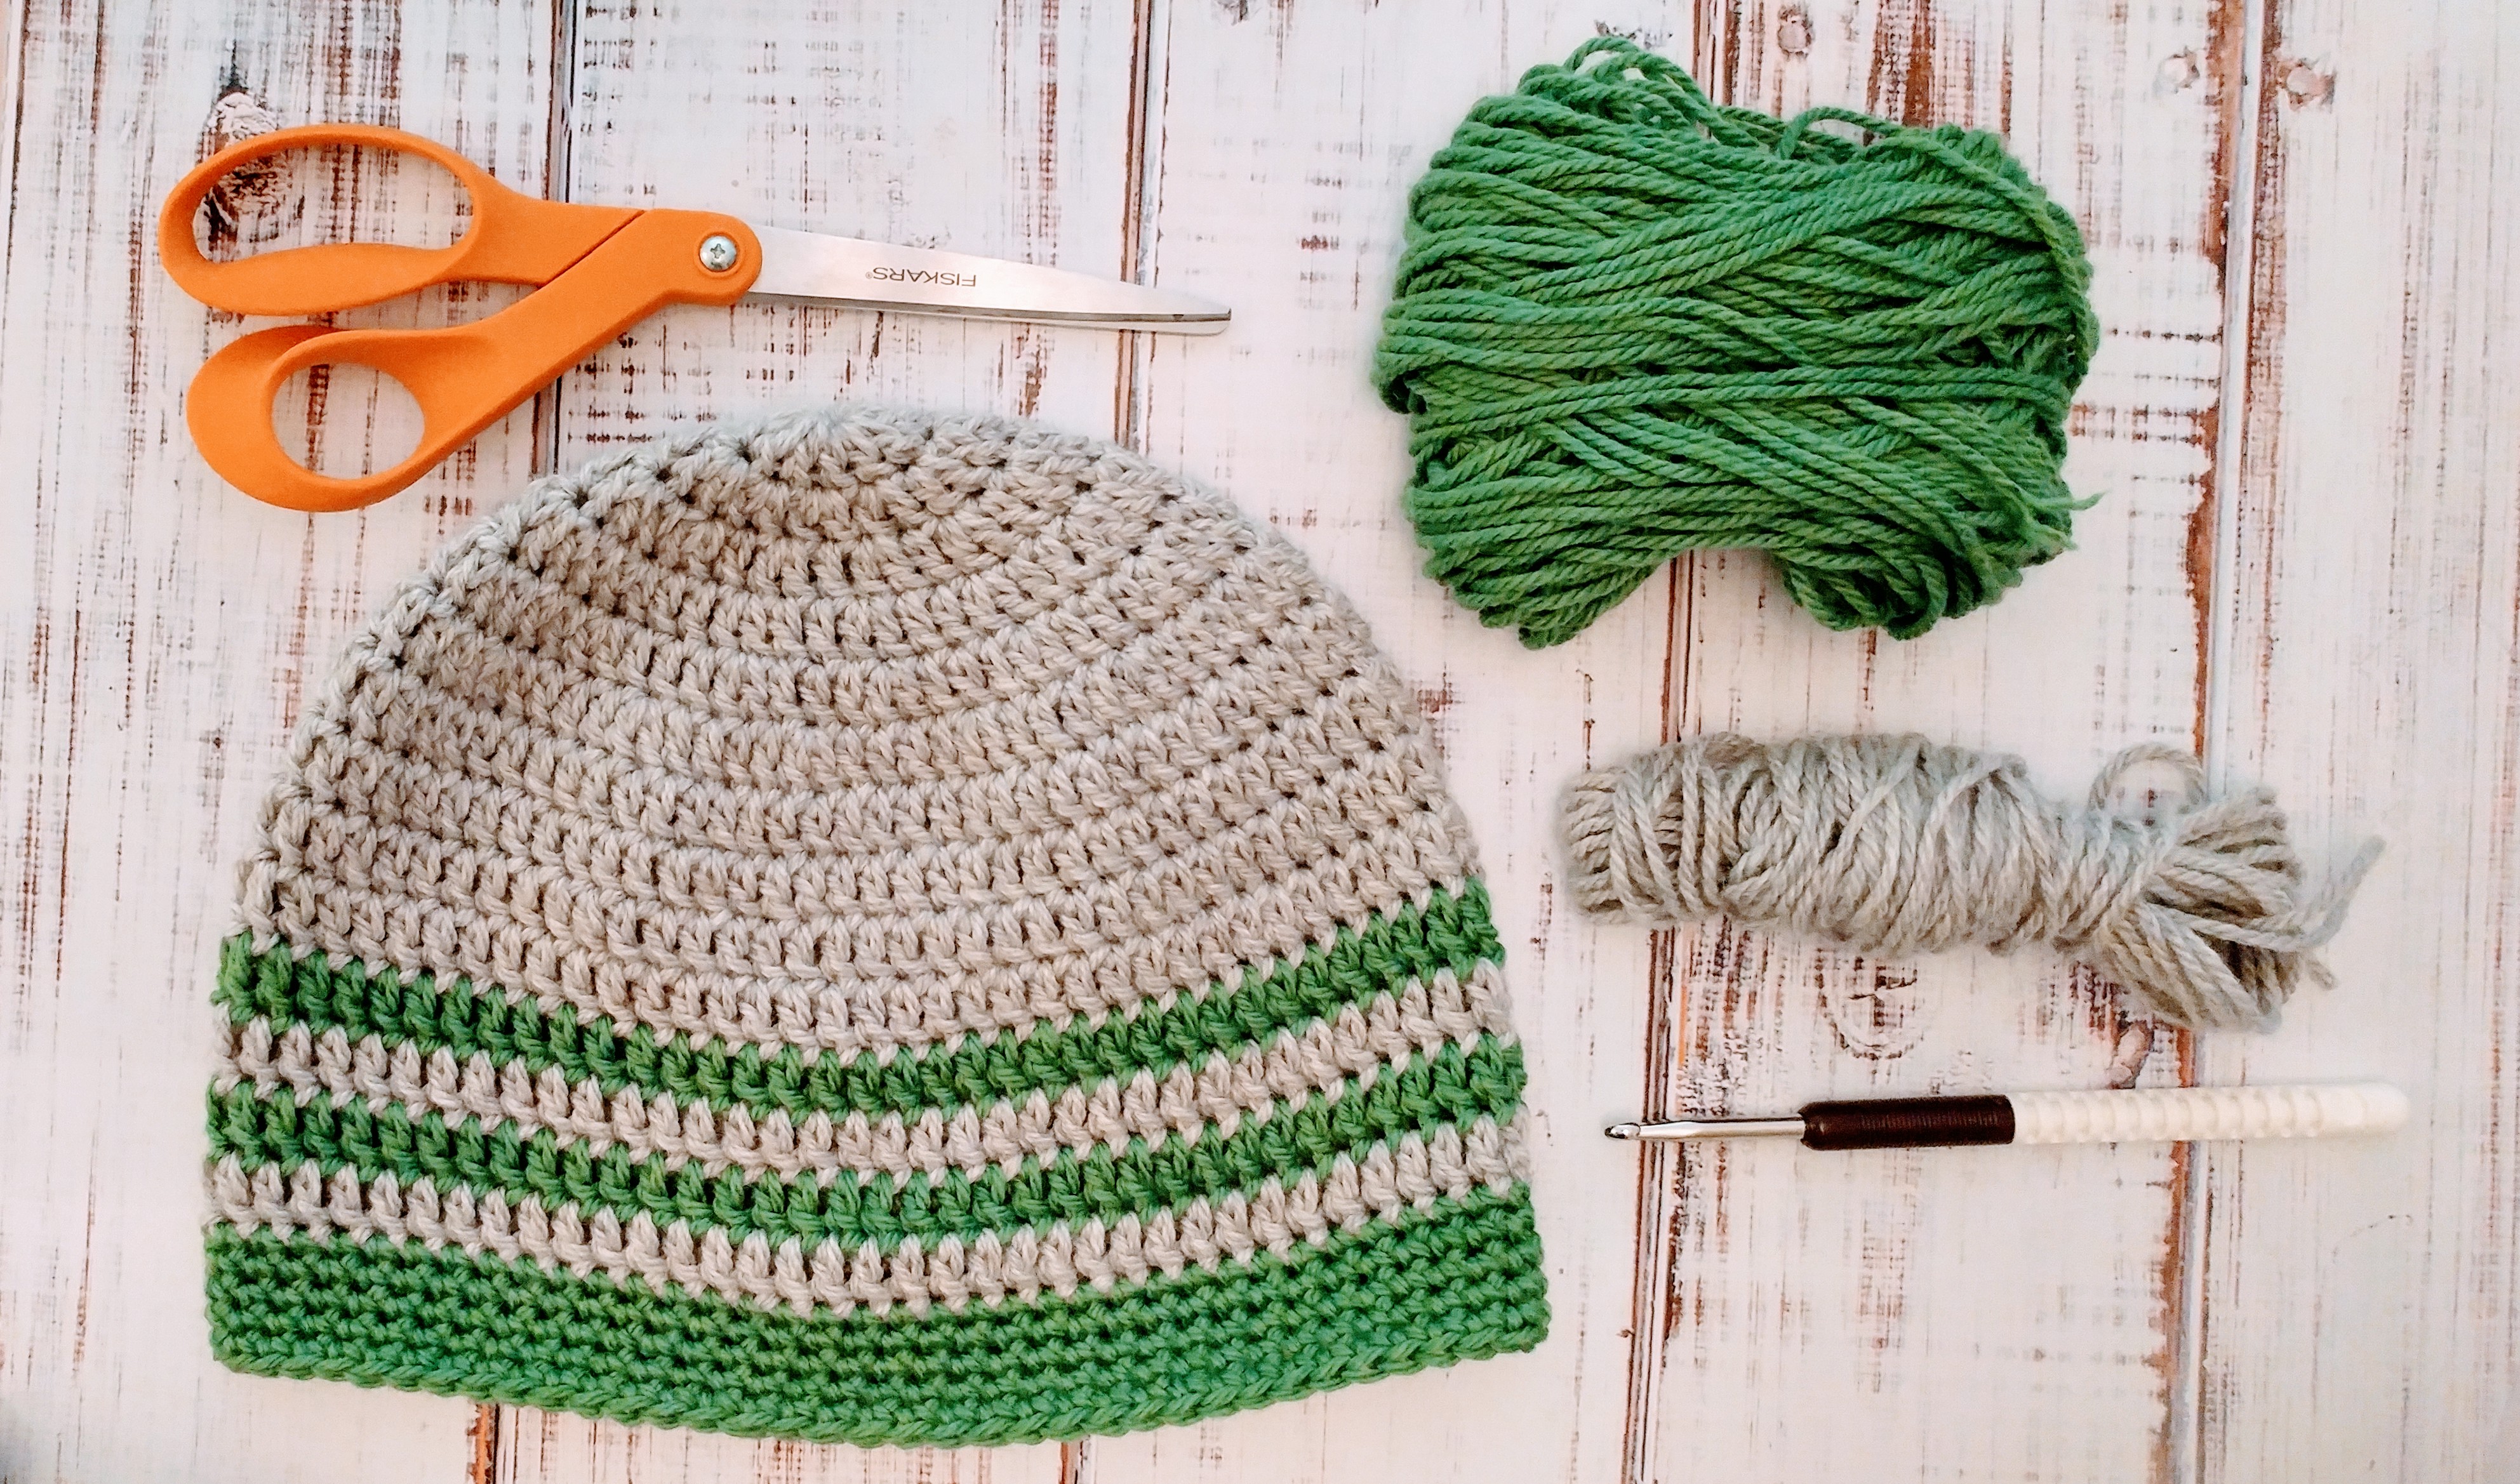 Free pattern for the simplest crochet hat! https://www.kimwerker.com/blog